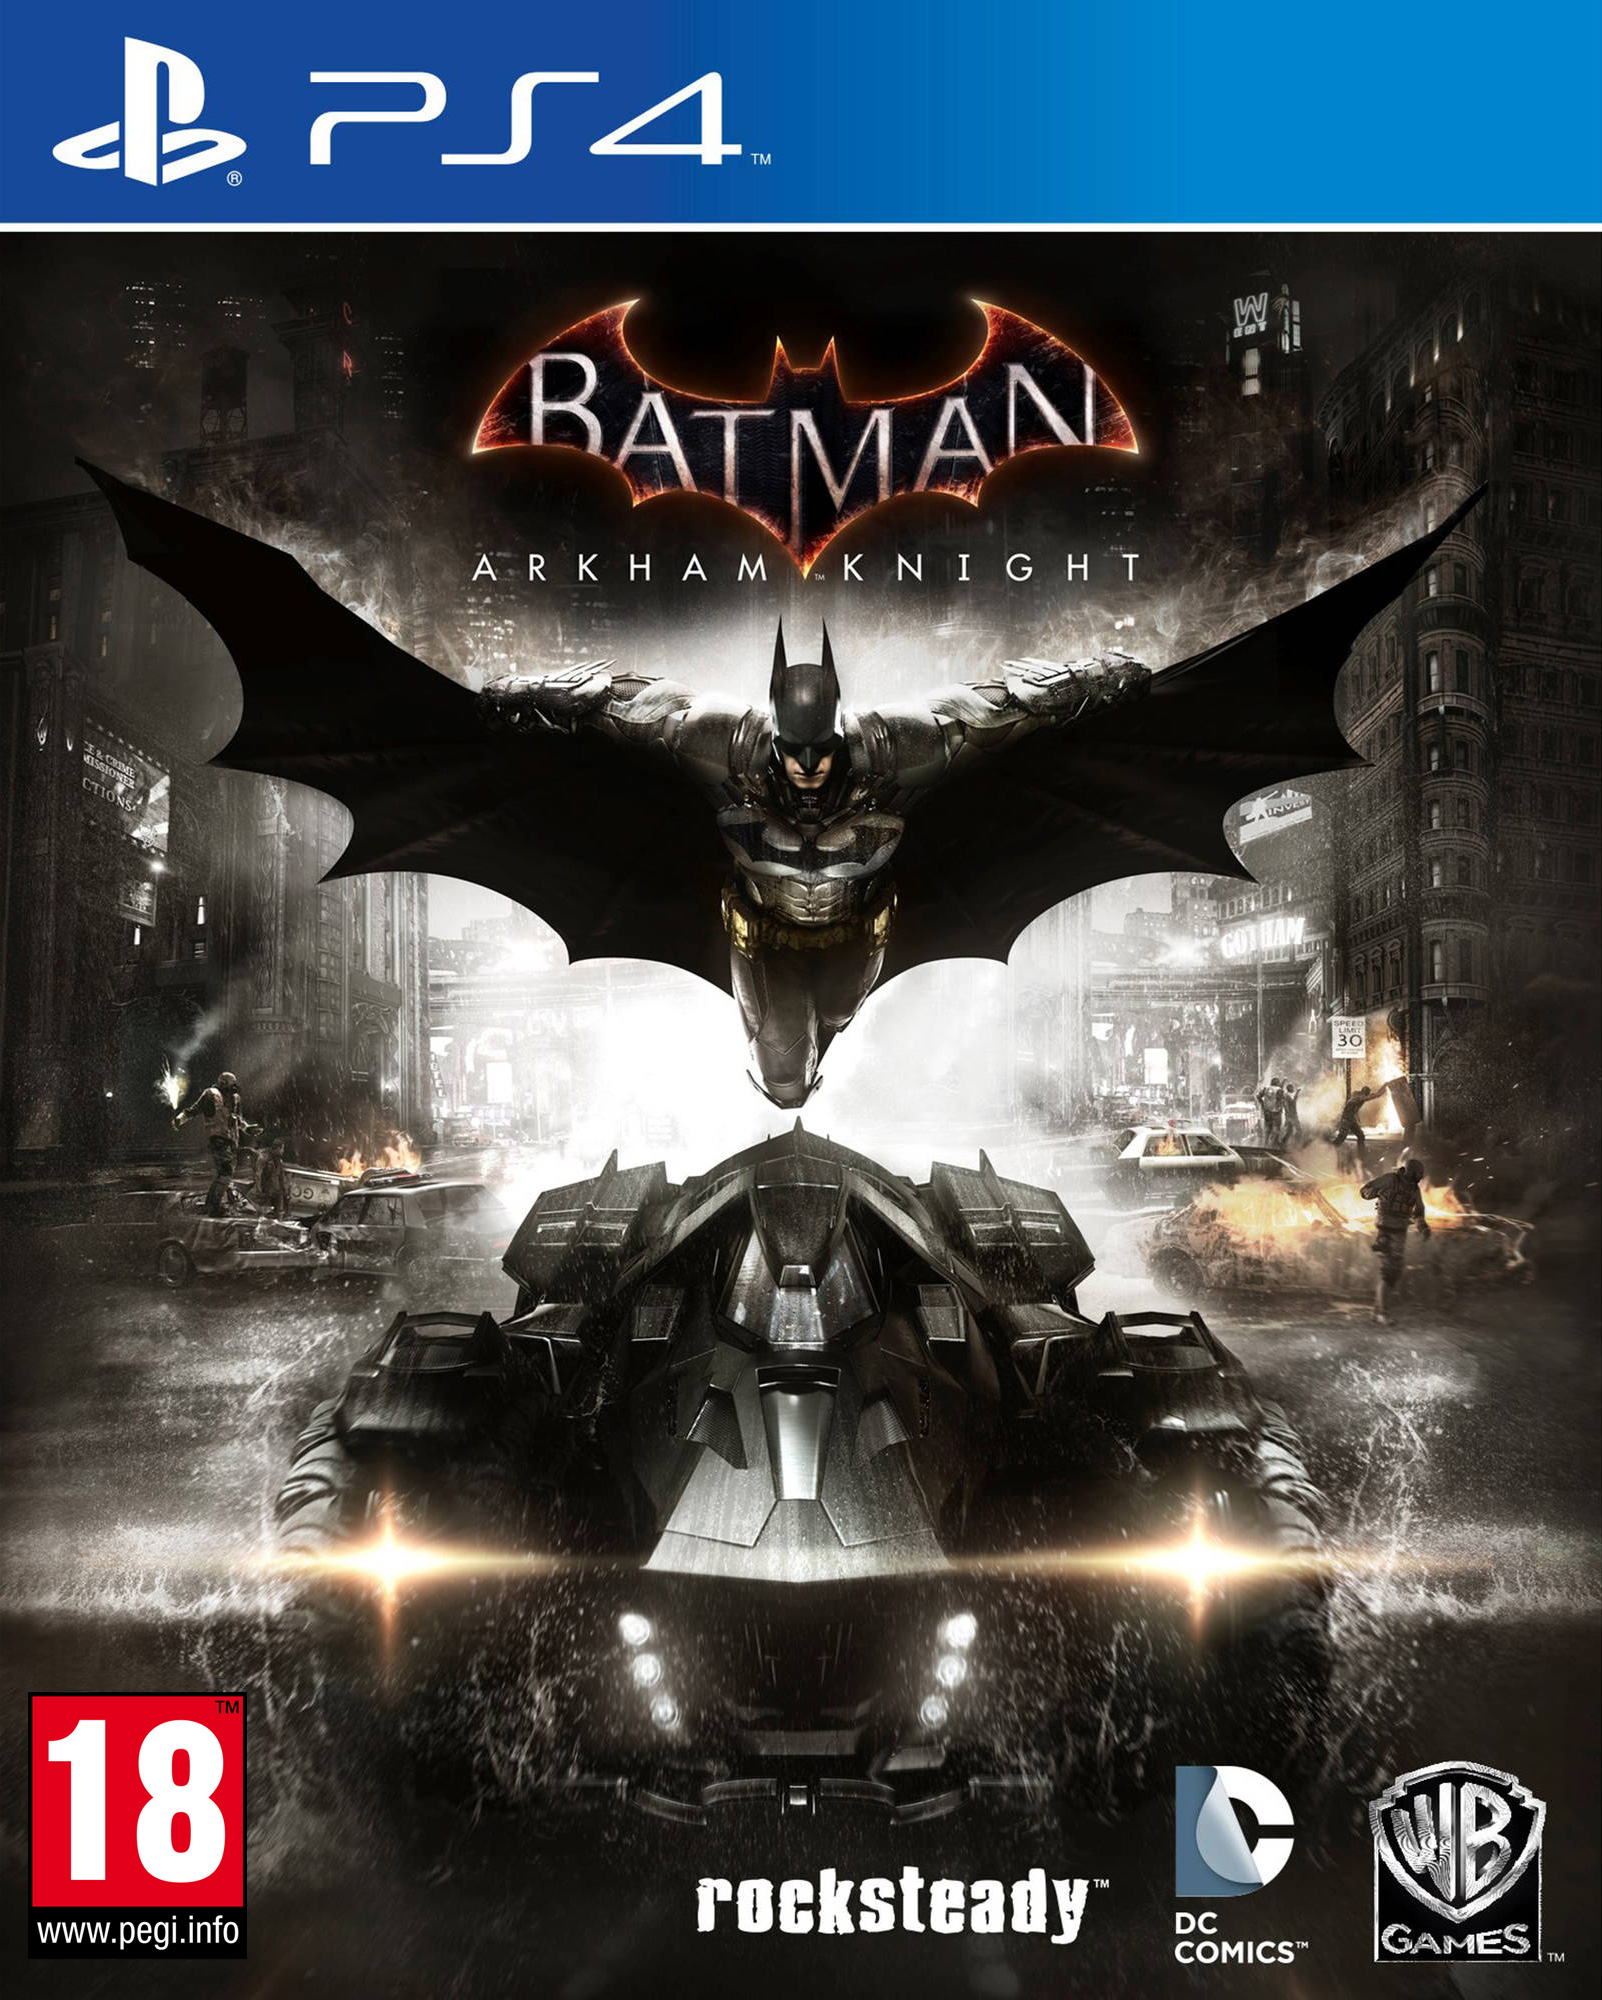 download free batman arkham knight ps4